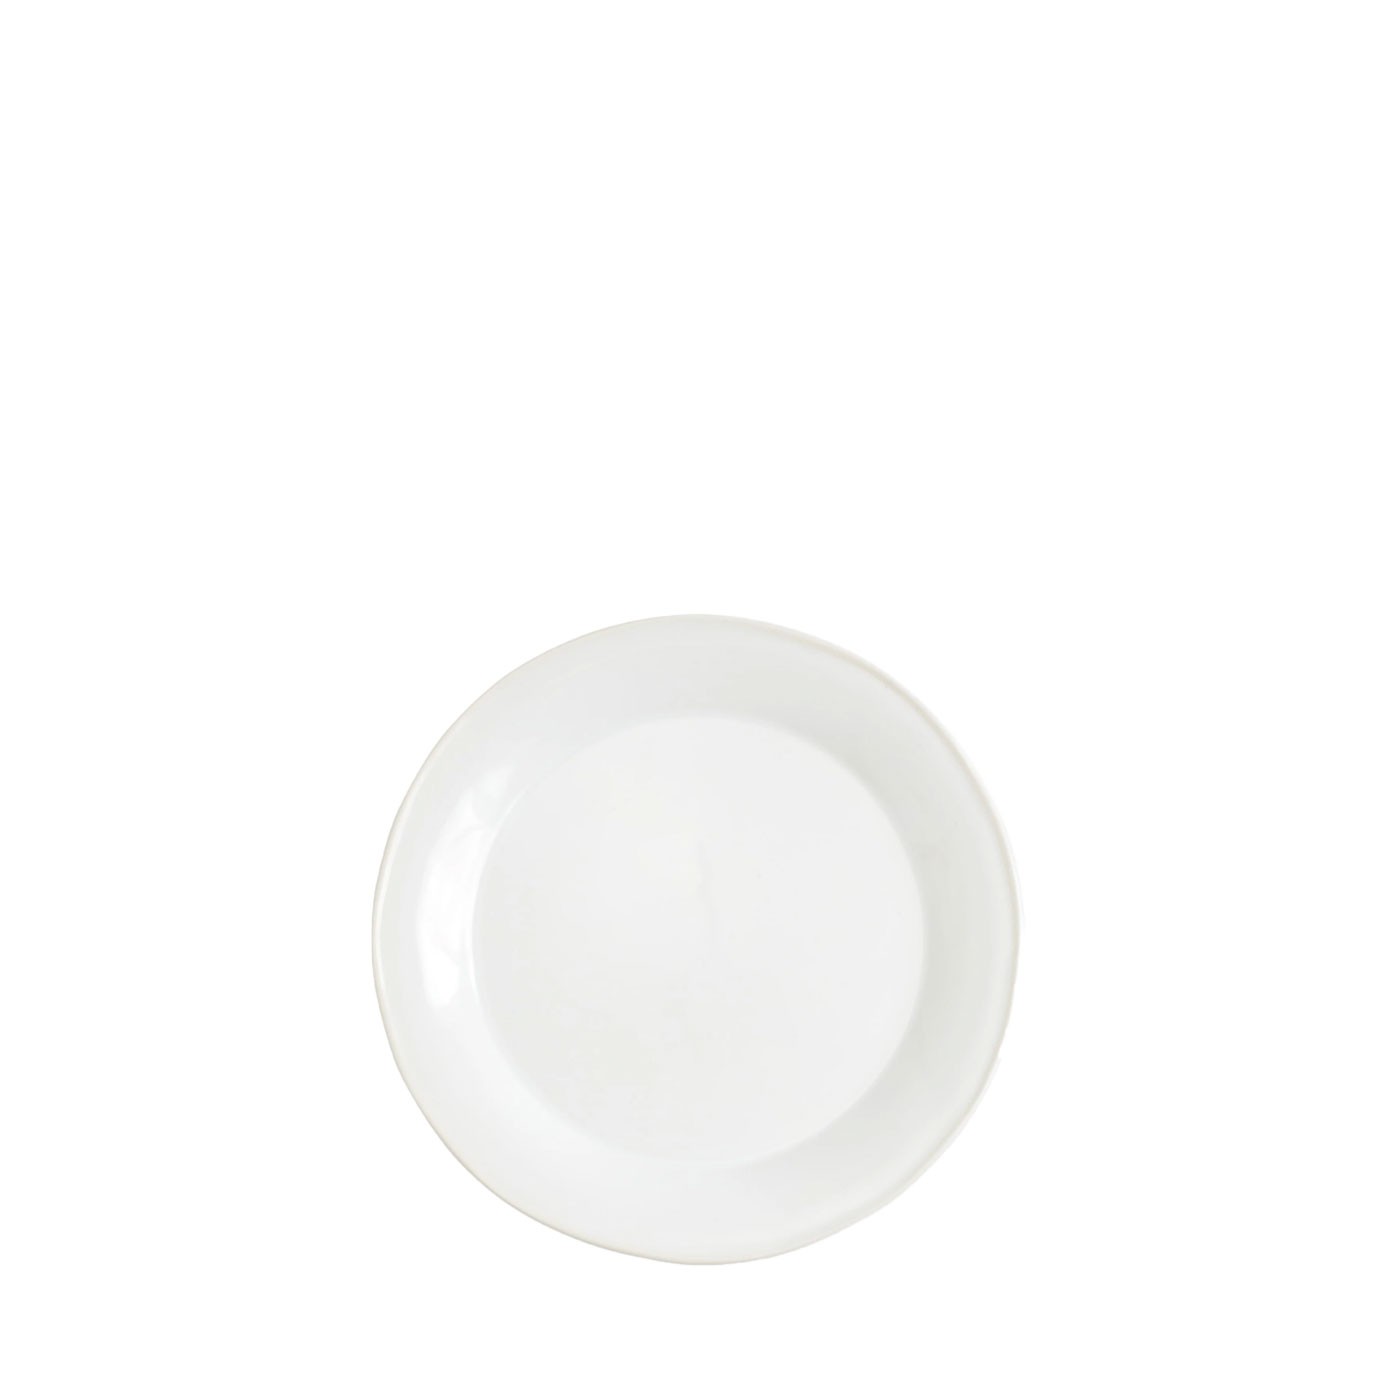 Chroma White Salad Plate - Vietri | Eataly.com